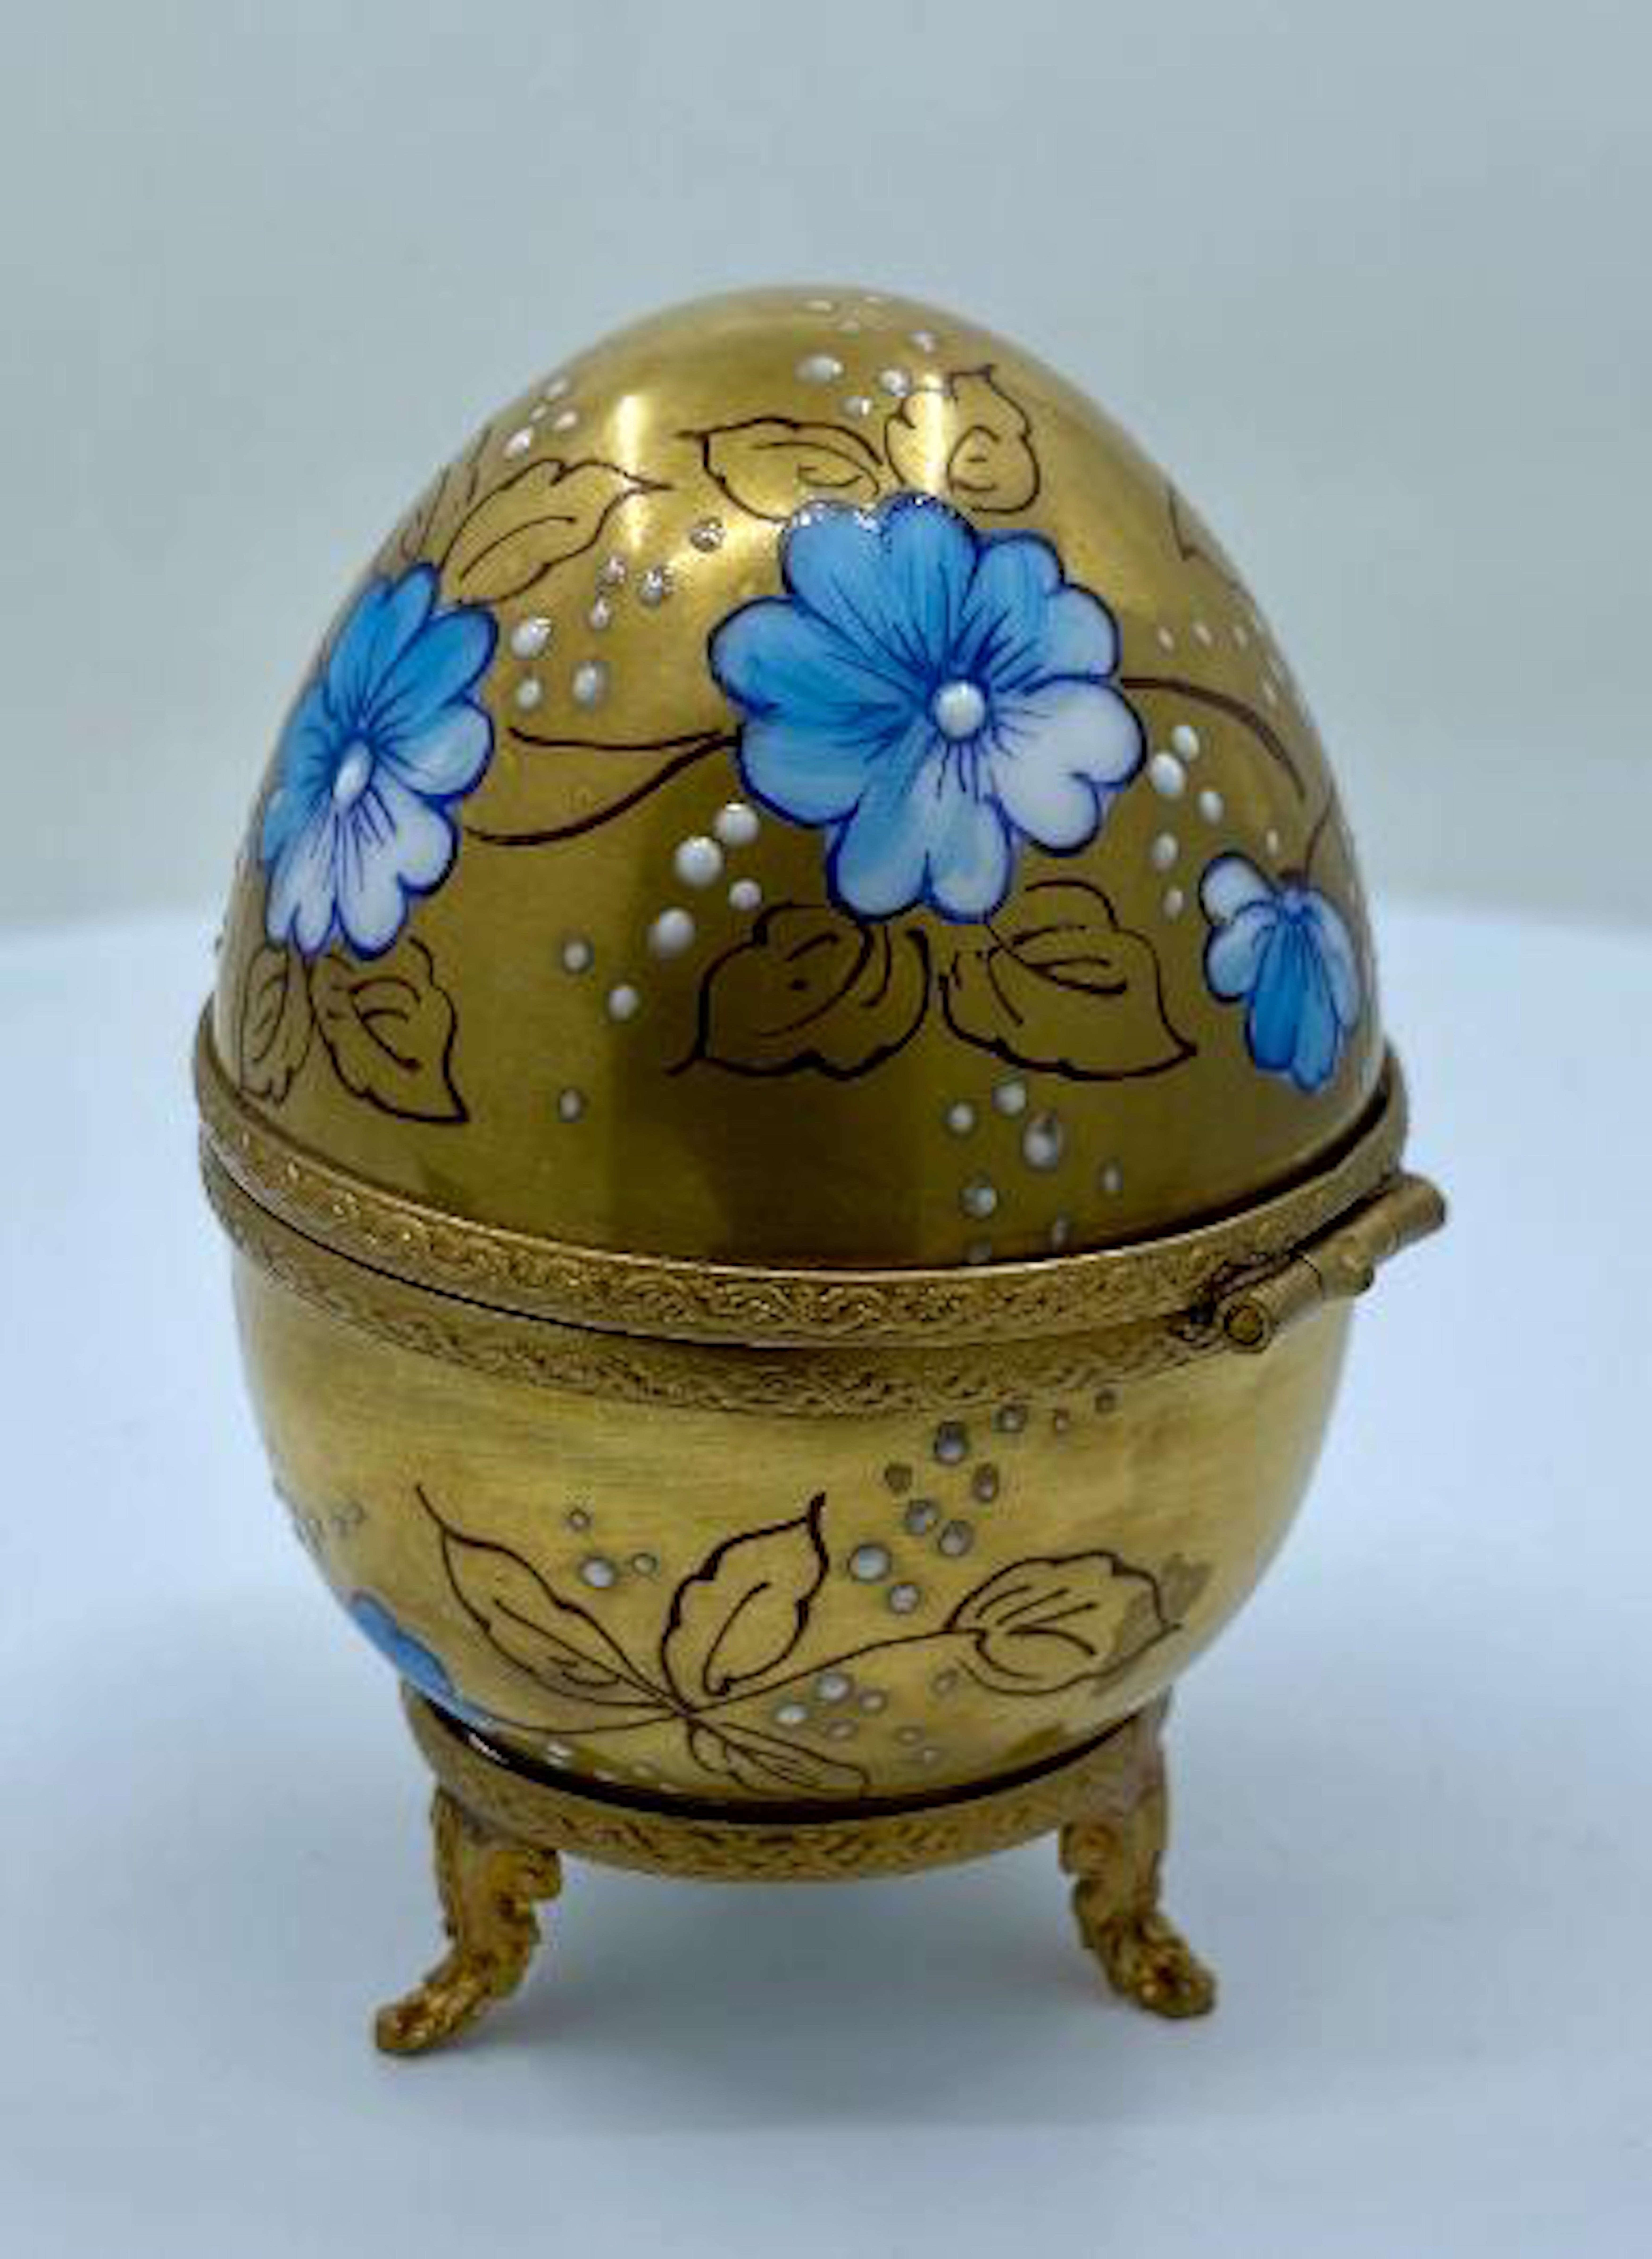 French Exquisite Limoges France 24-Karat Gold Porcelain Egg with Perfume Bottle Inside